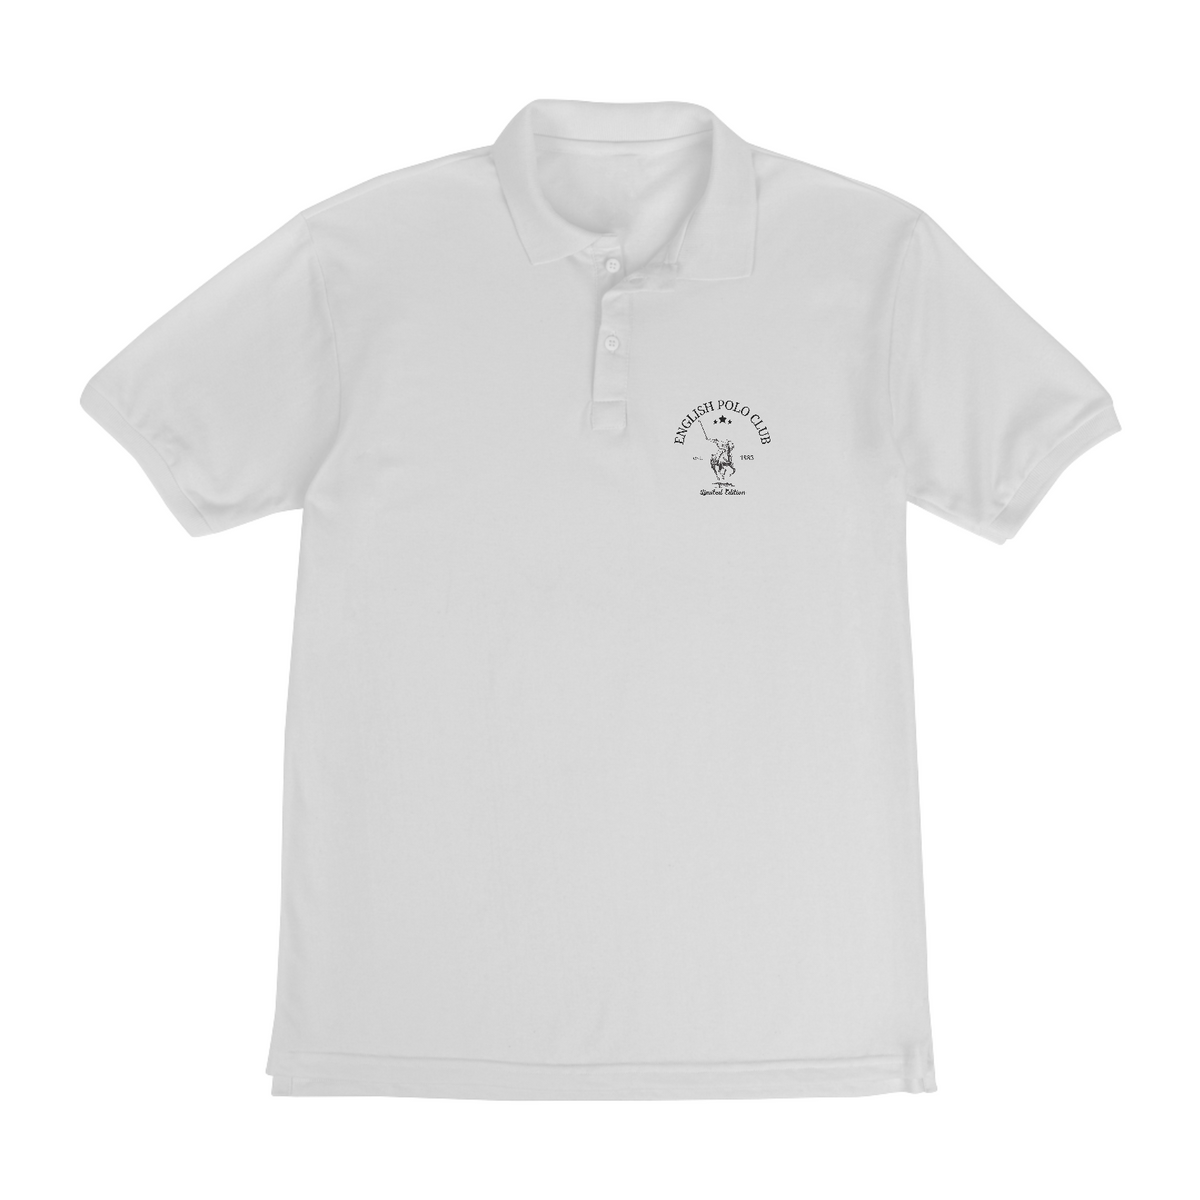 Nome do produto: Camiseta Polo - Polo Club